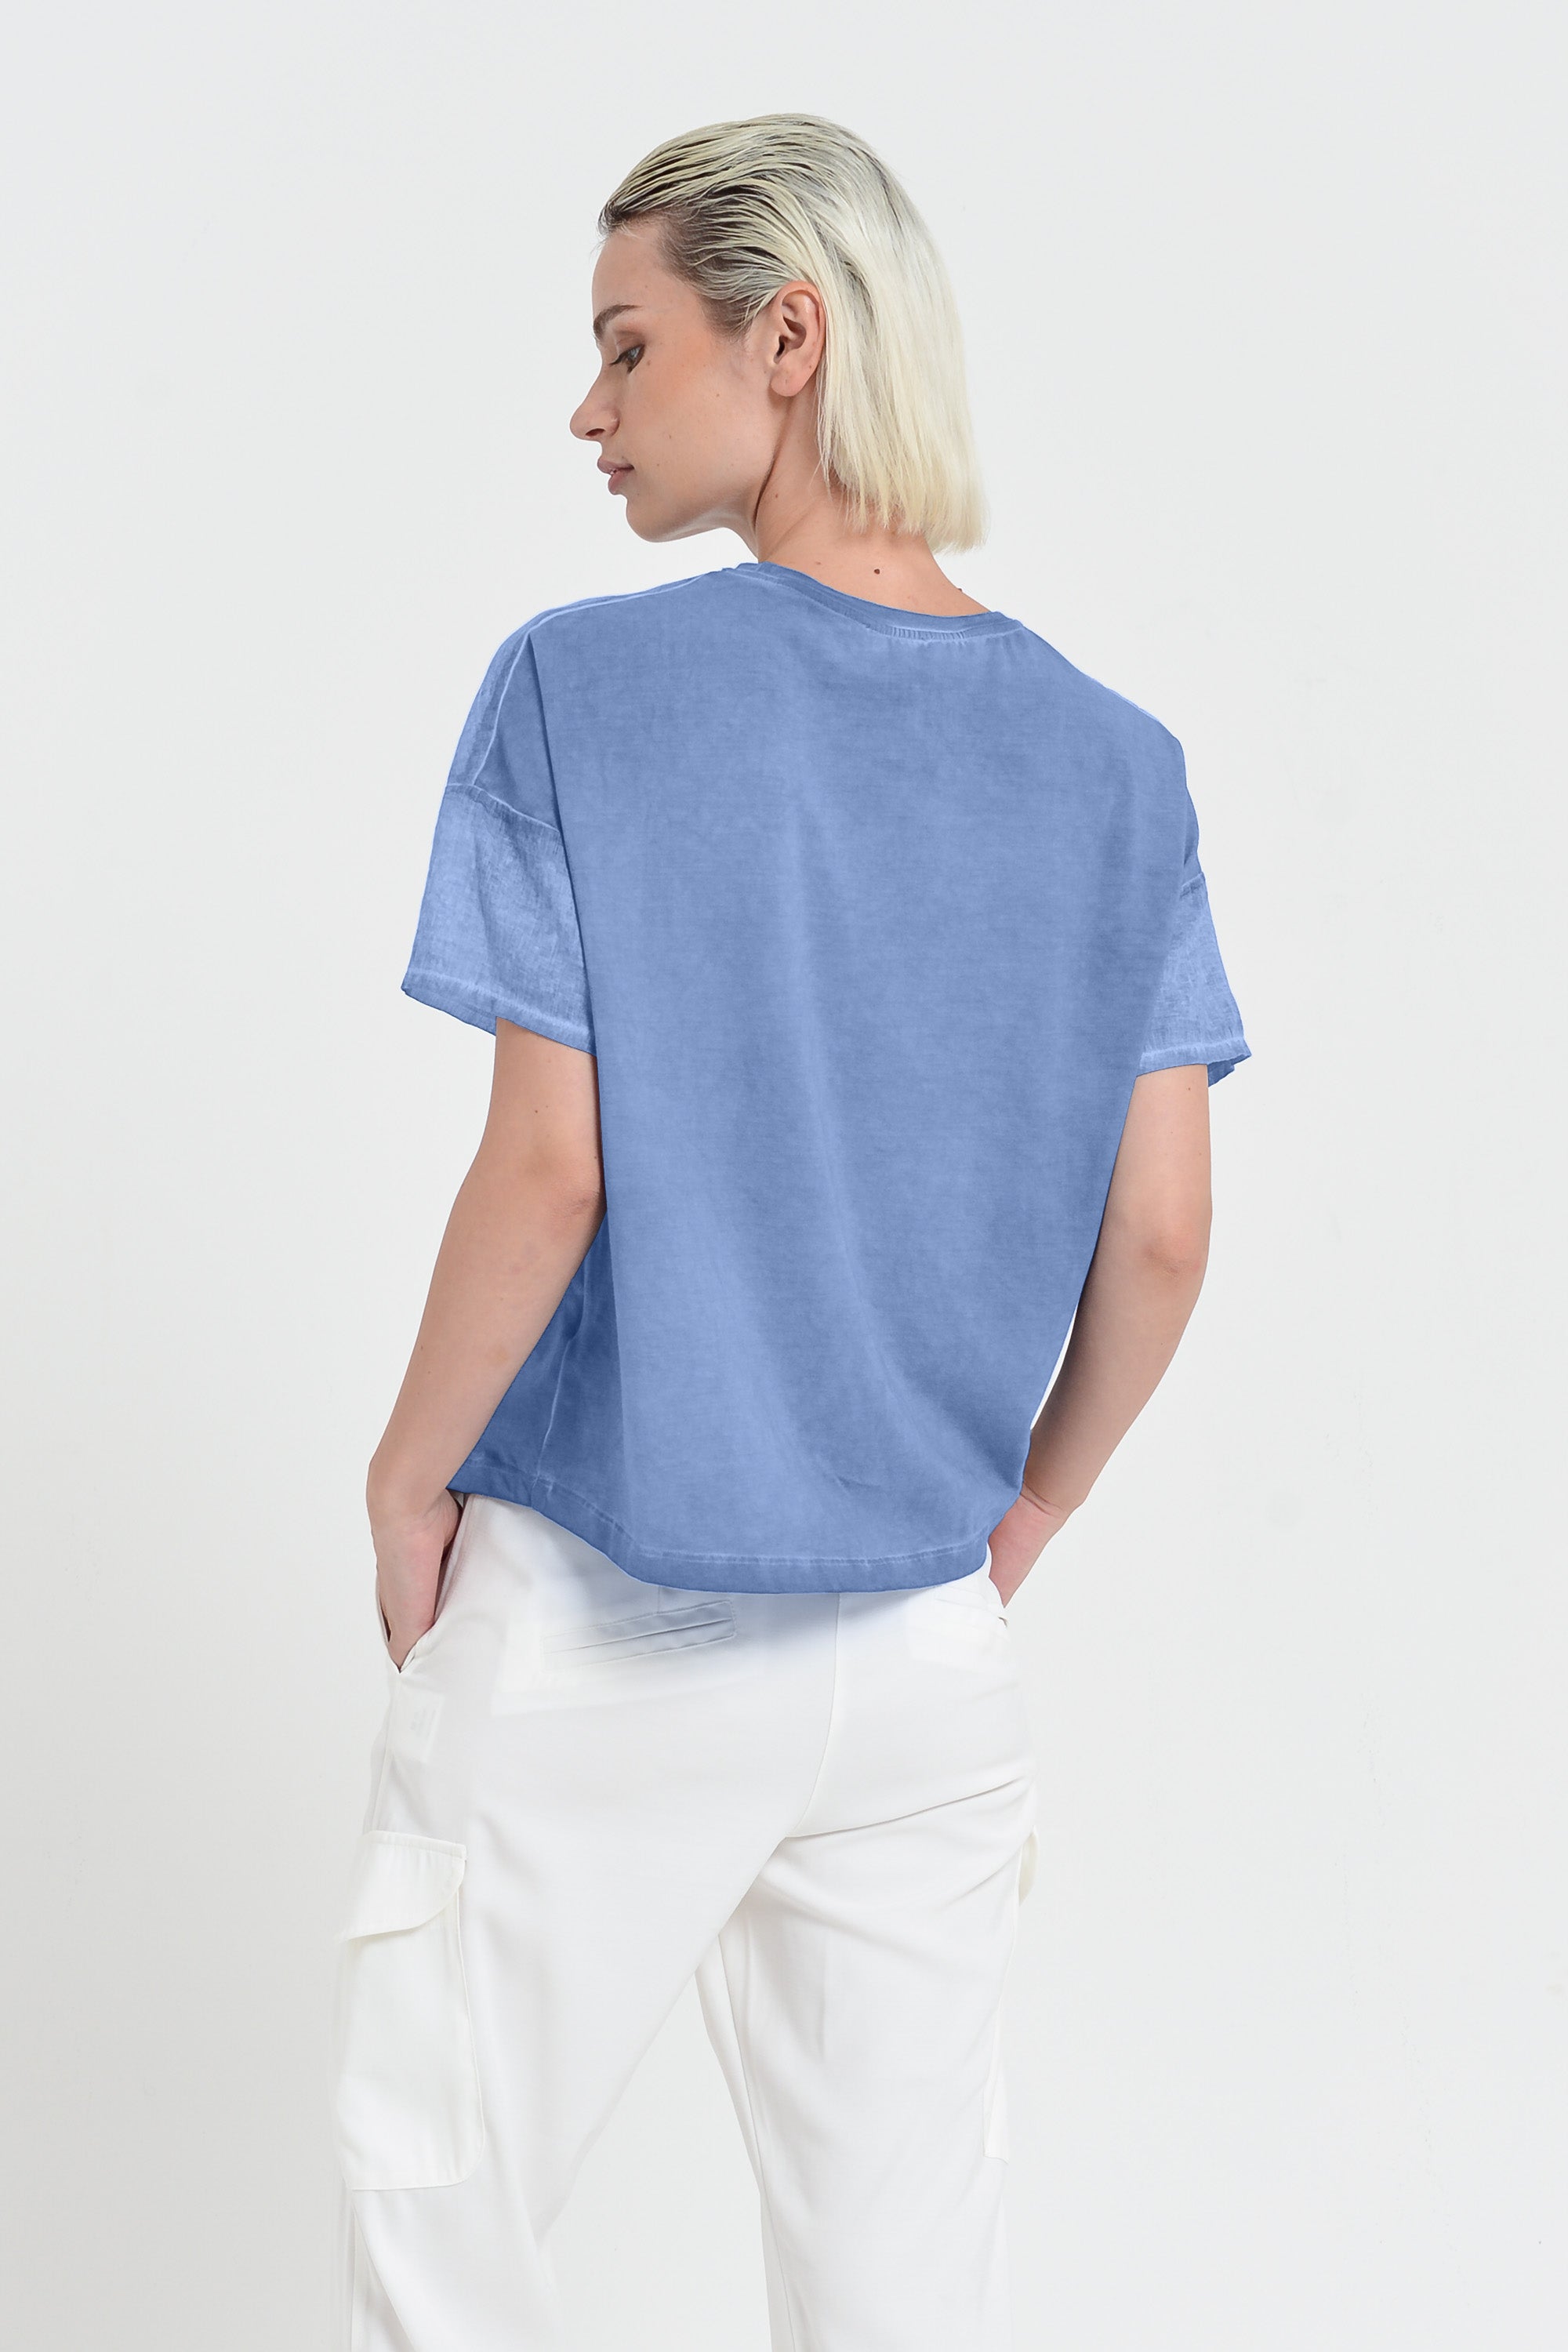 Sunset T-Shirt - Women's Crewneck Cotton T-Shirt - Bay